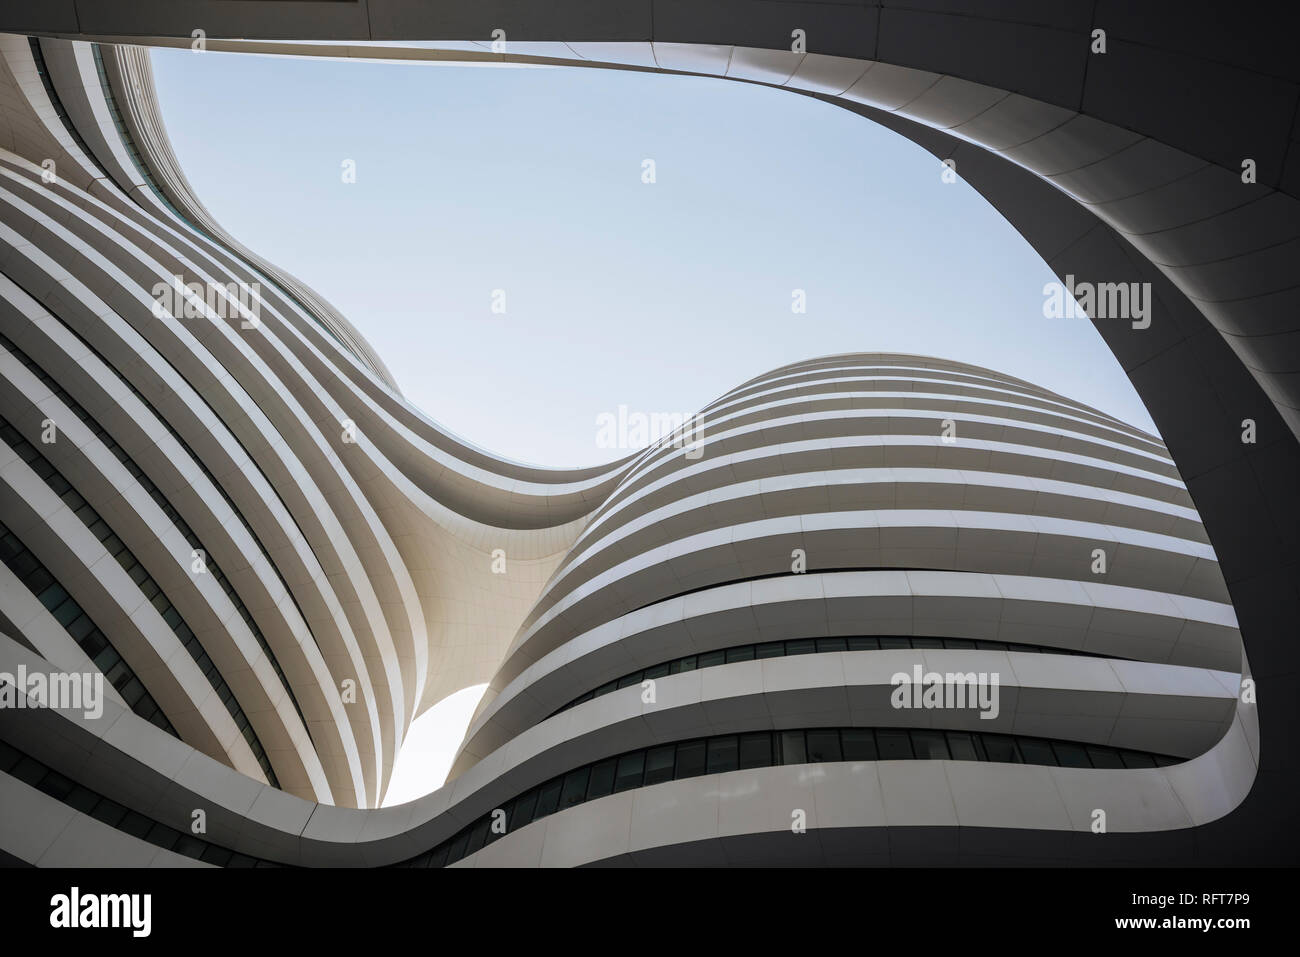 Galaxy Soho Gebäude, entworfen von Zaha Hadid, Peking, China, Asien Stockfoto